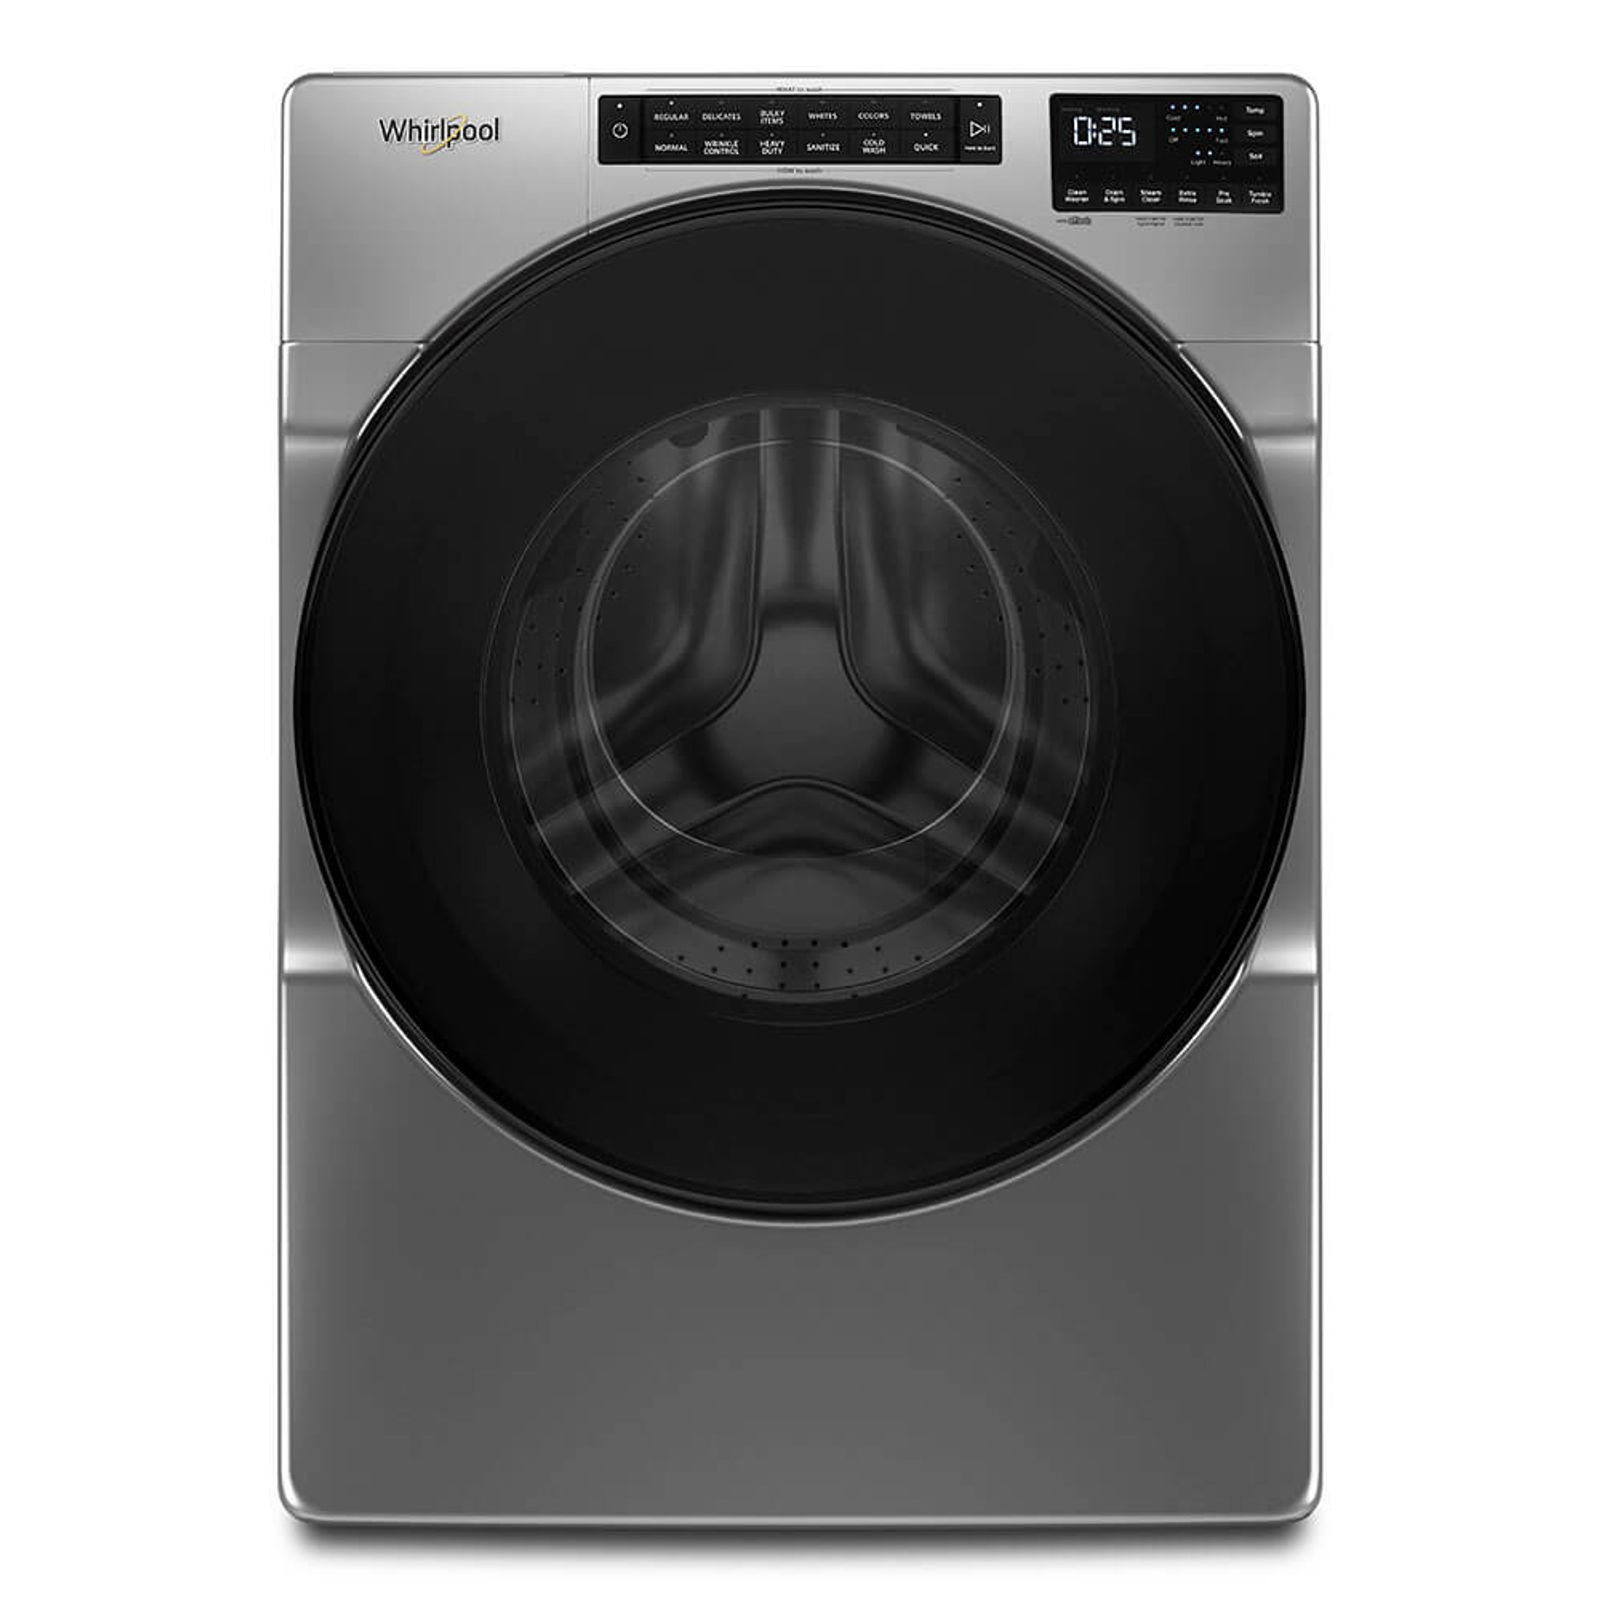 Cuál es la mejor lavadora según su carga?